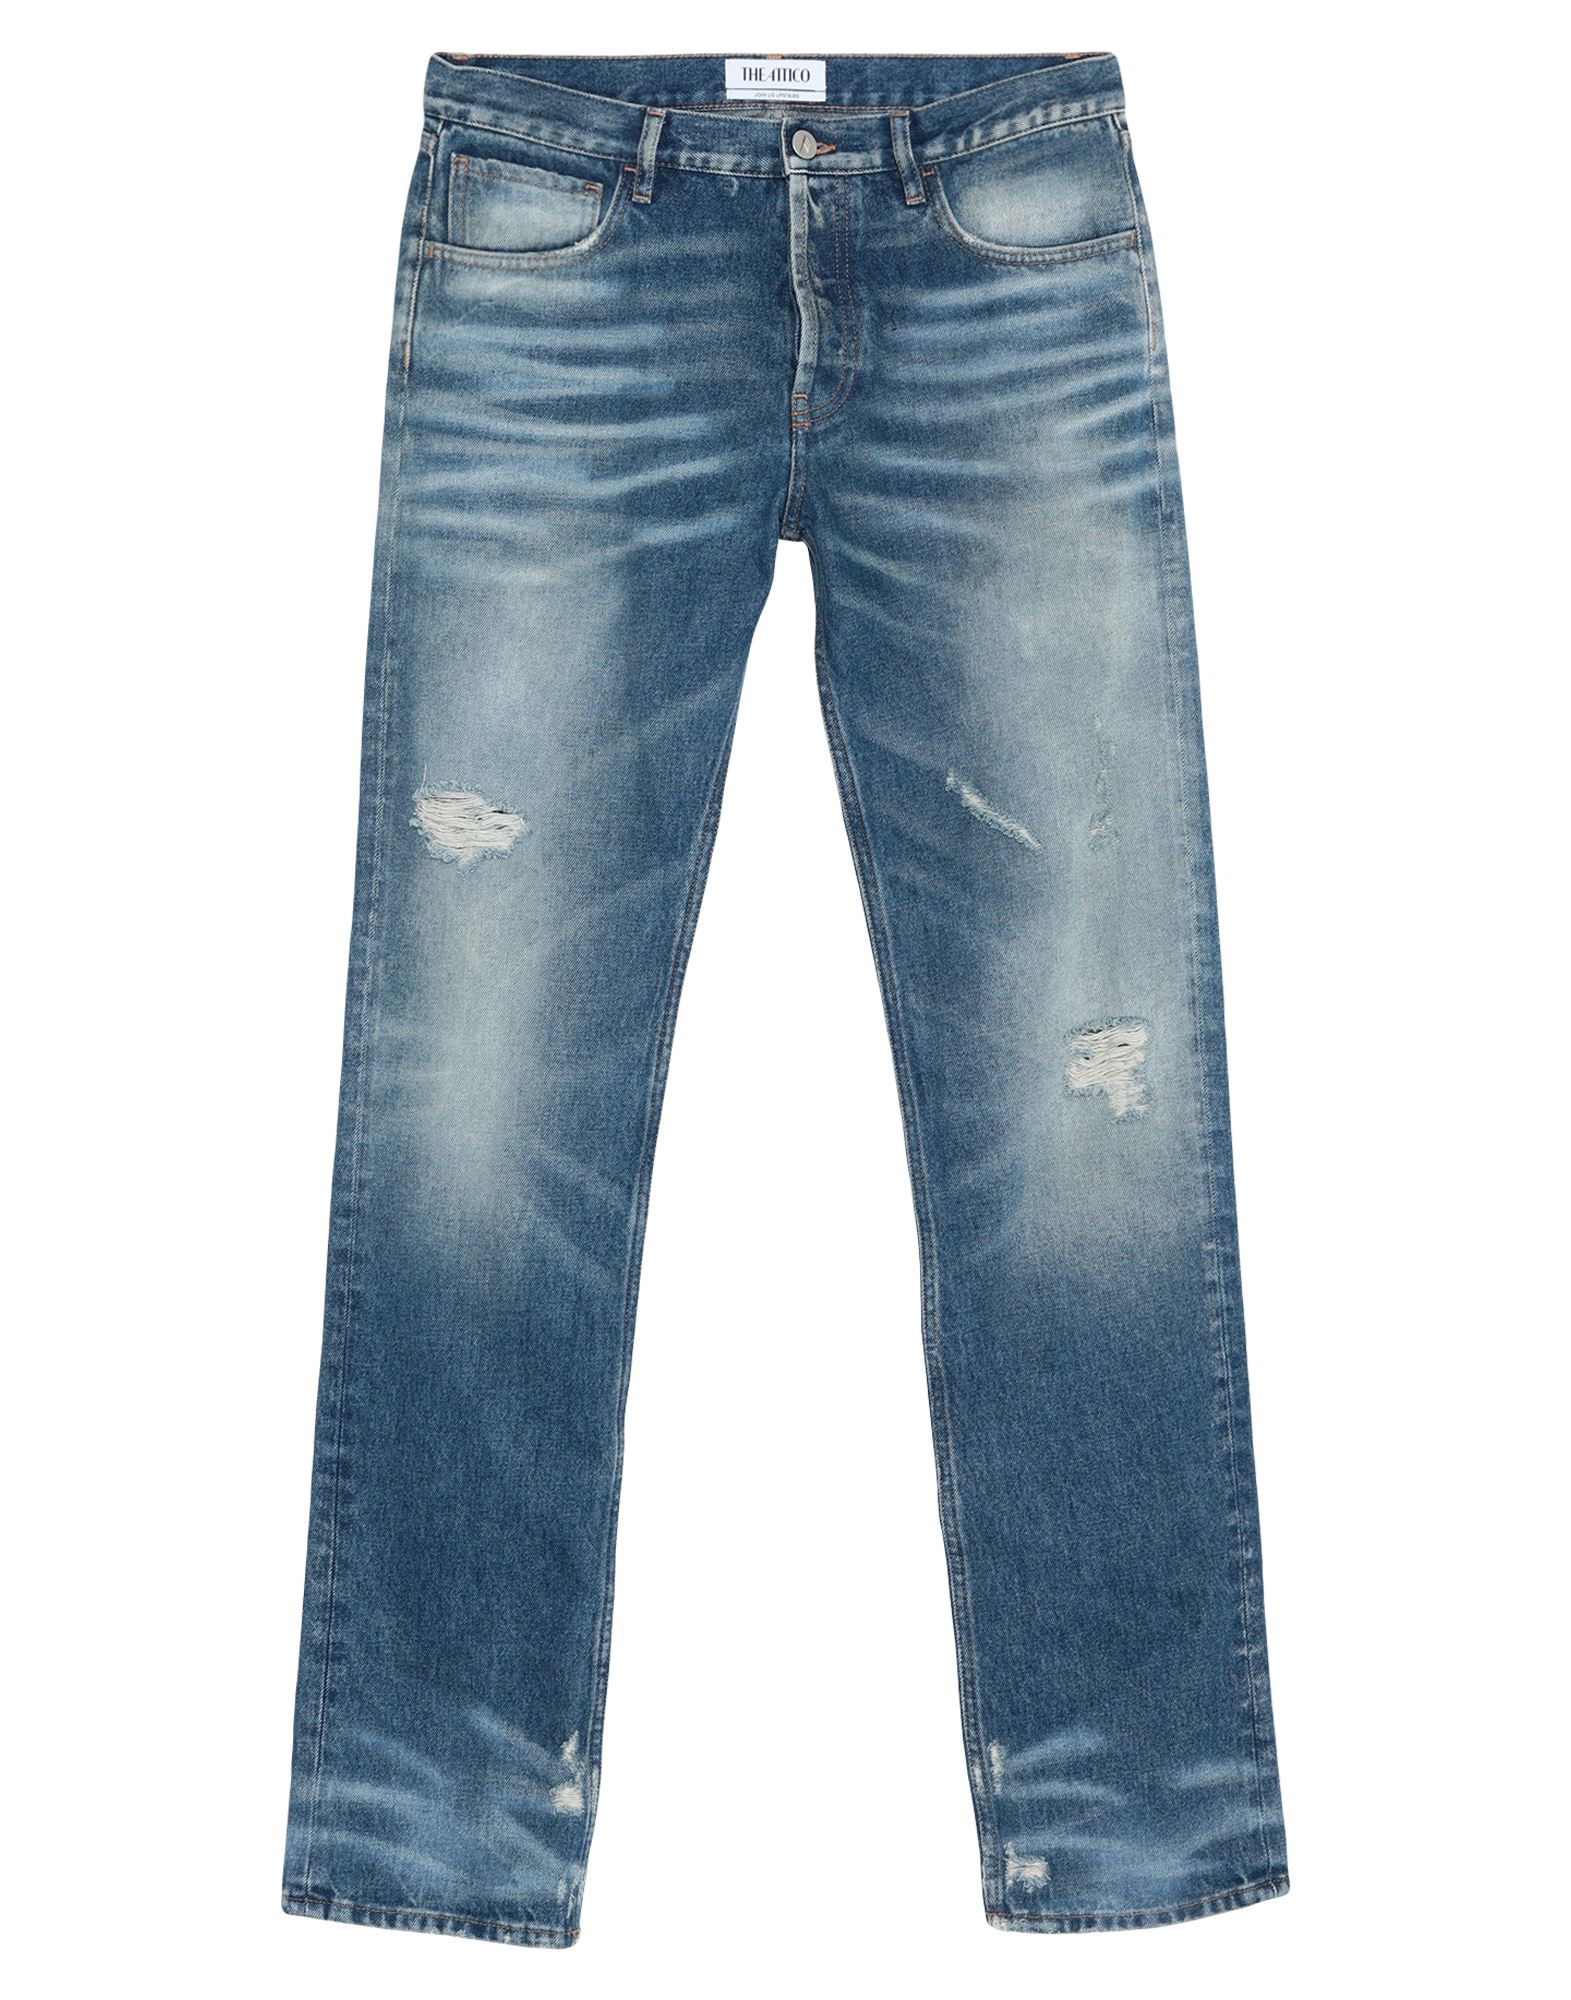 THE ATTICO Jeans | Smart Closet